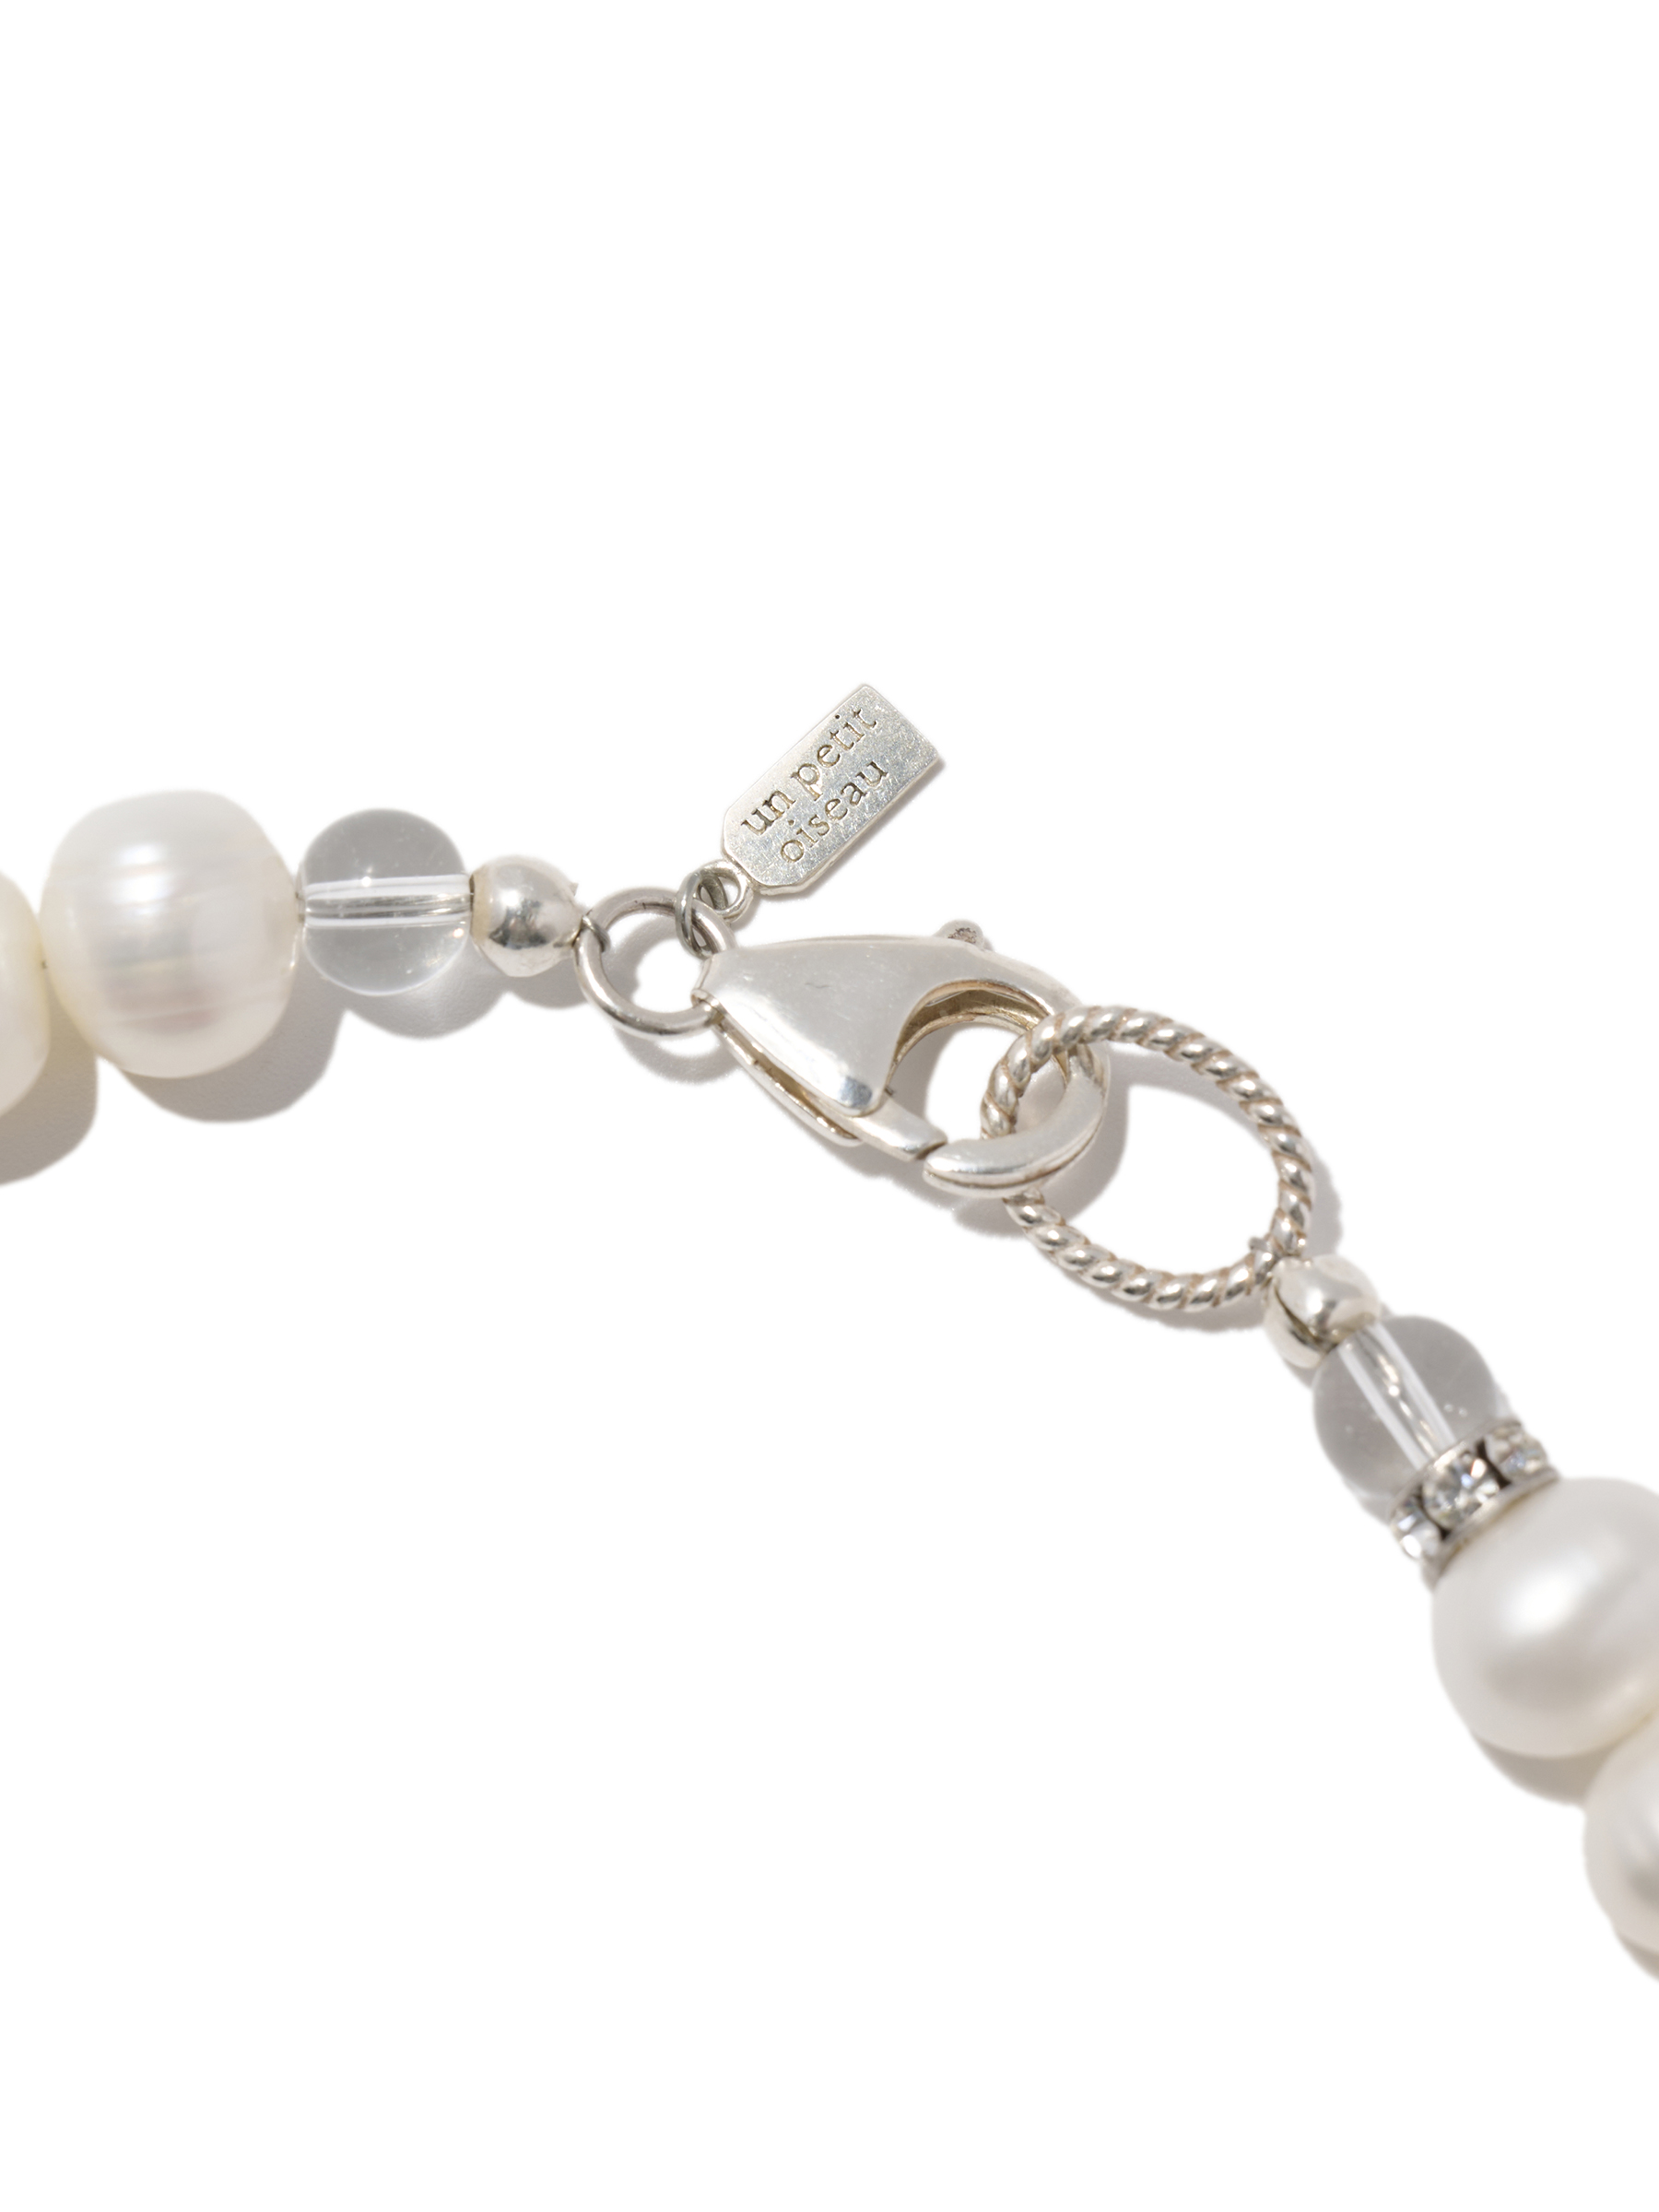 Big pearl Necklace